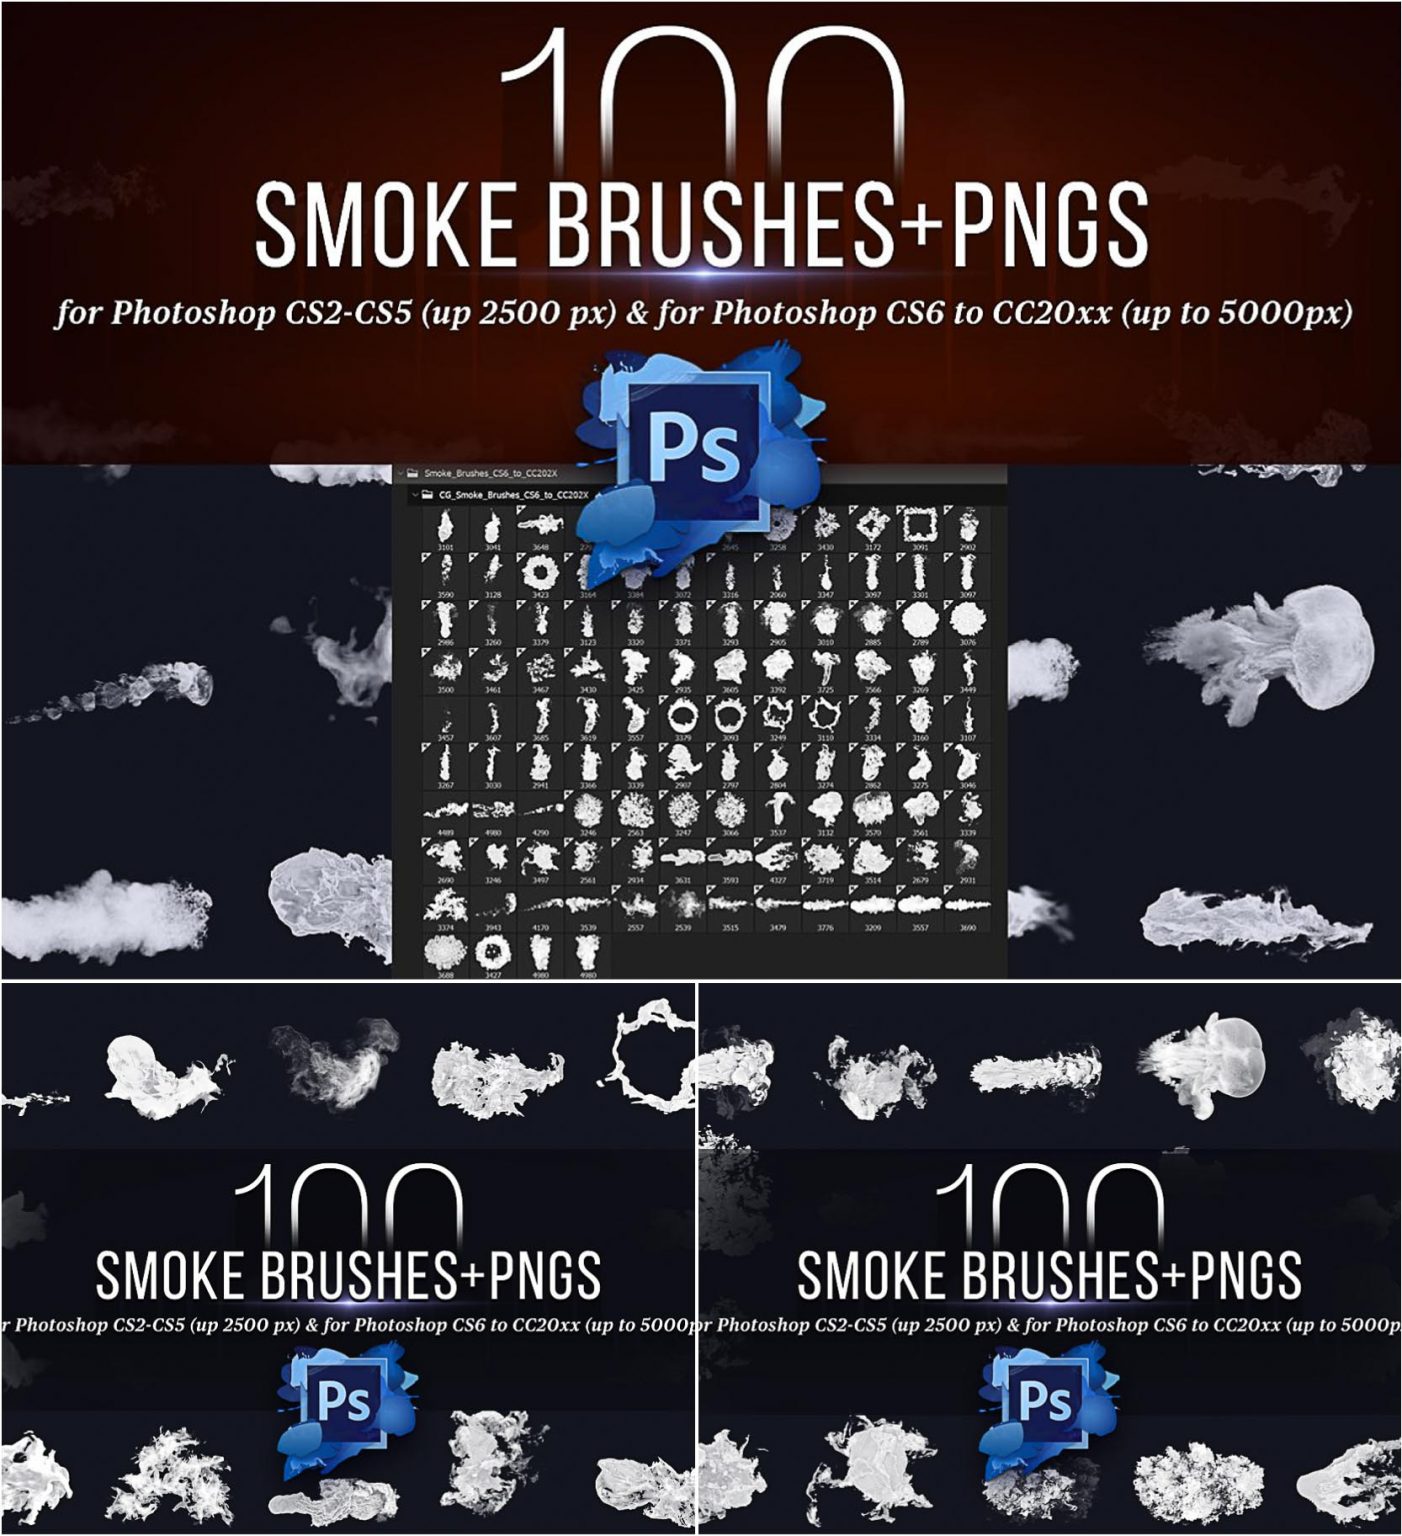 adobe photoshop cc smoke brushes free download